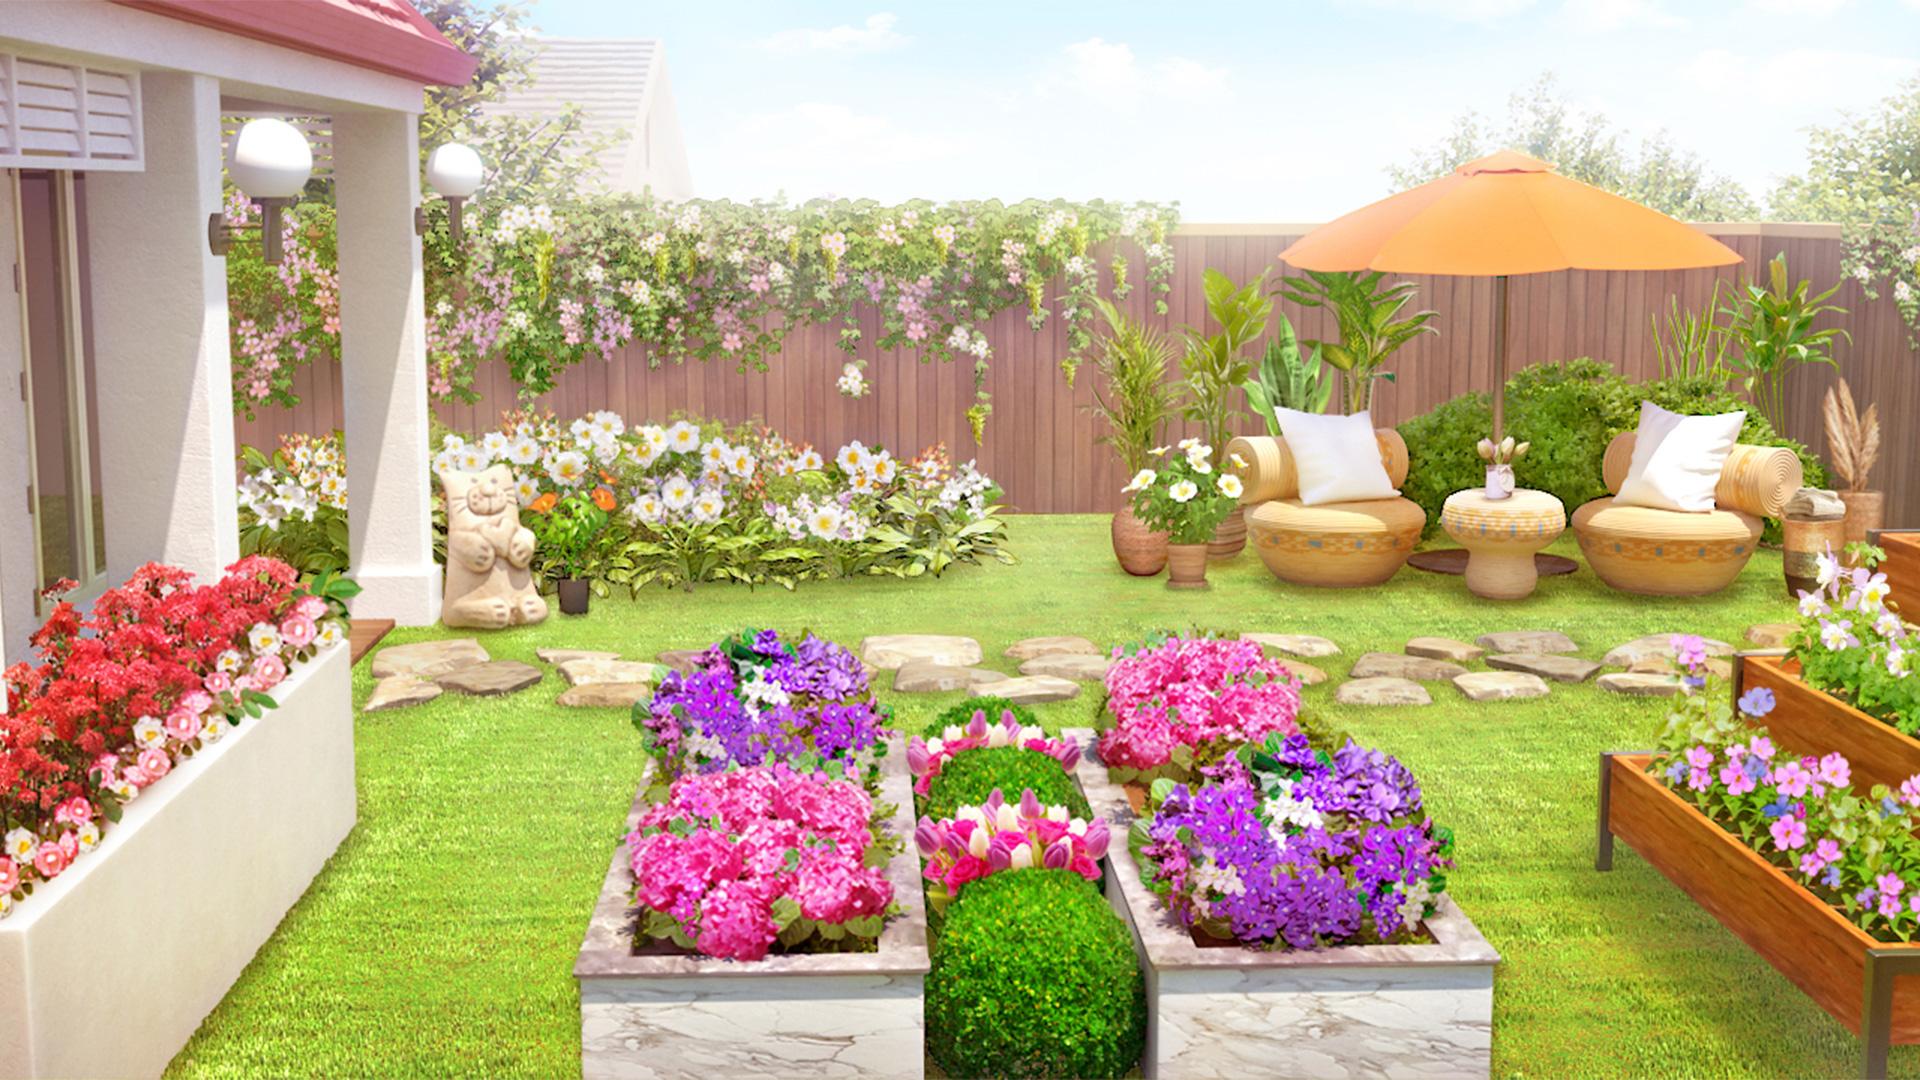 Home Design : My Dream Garden 1.21.0 Screenshot 15